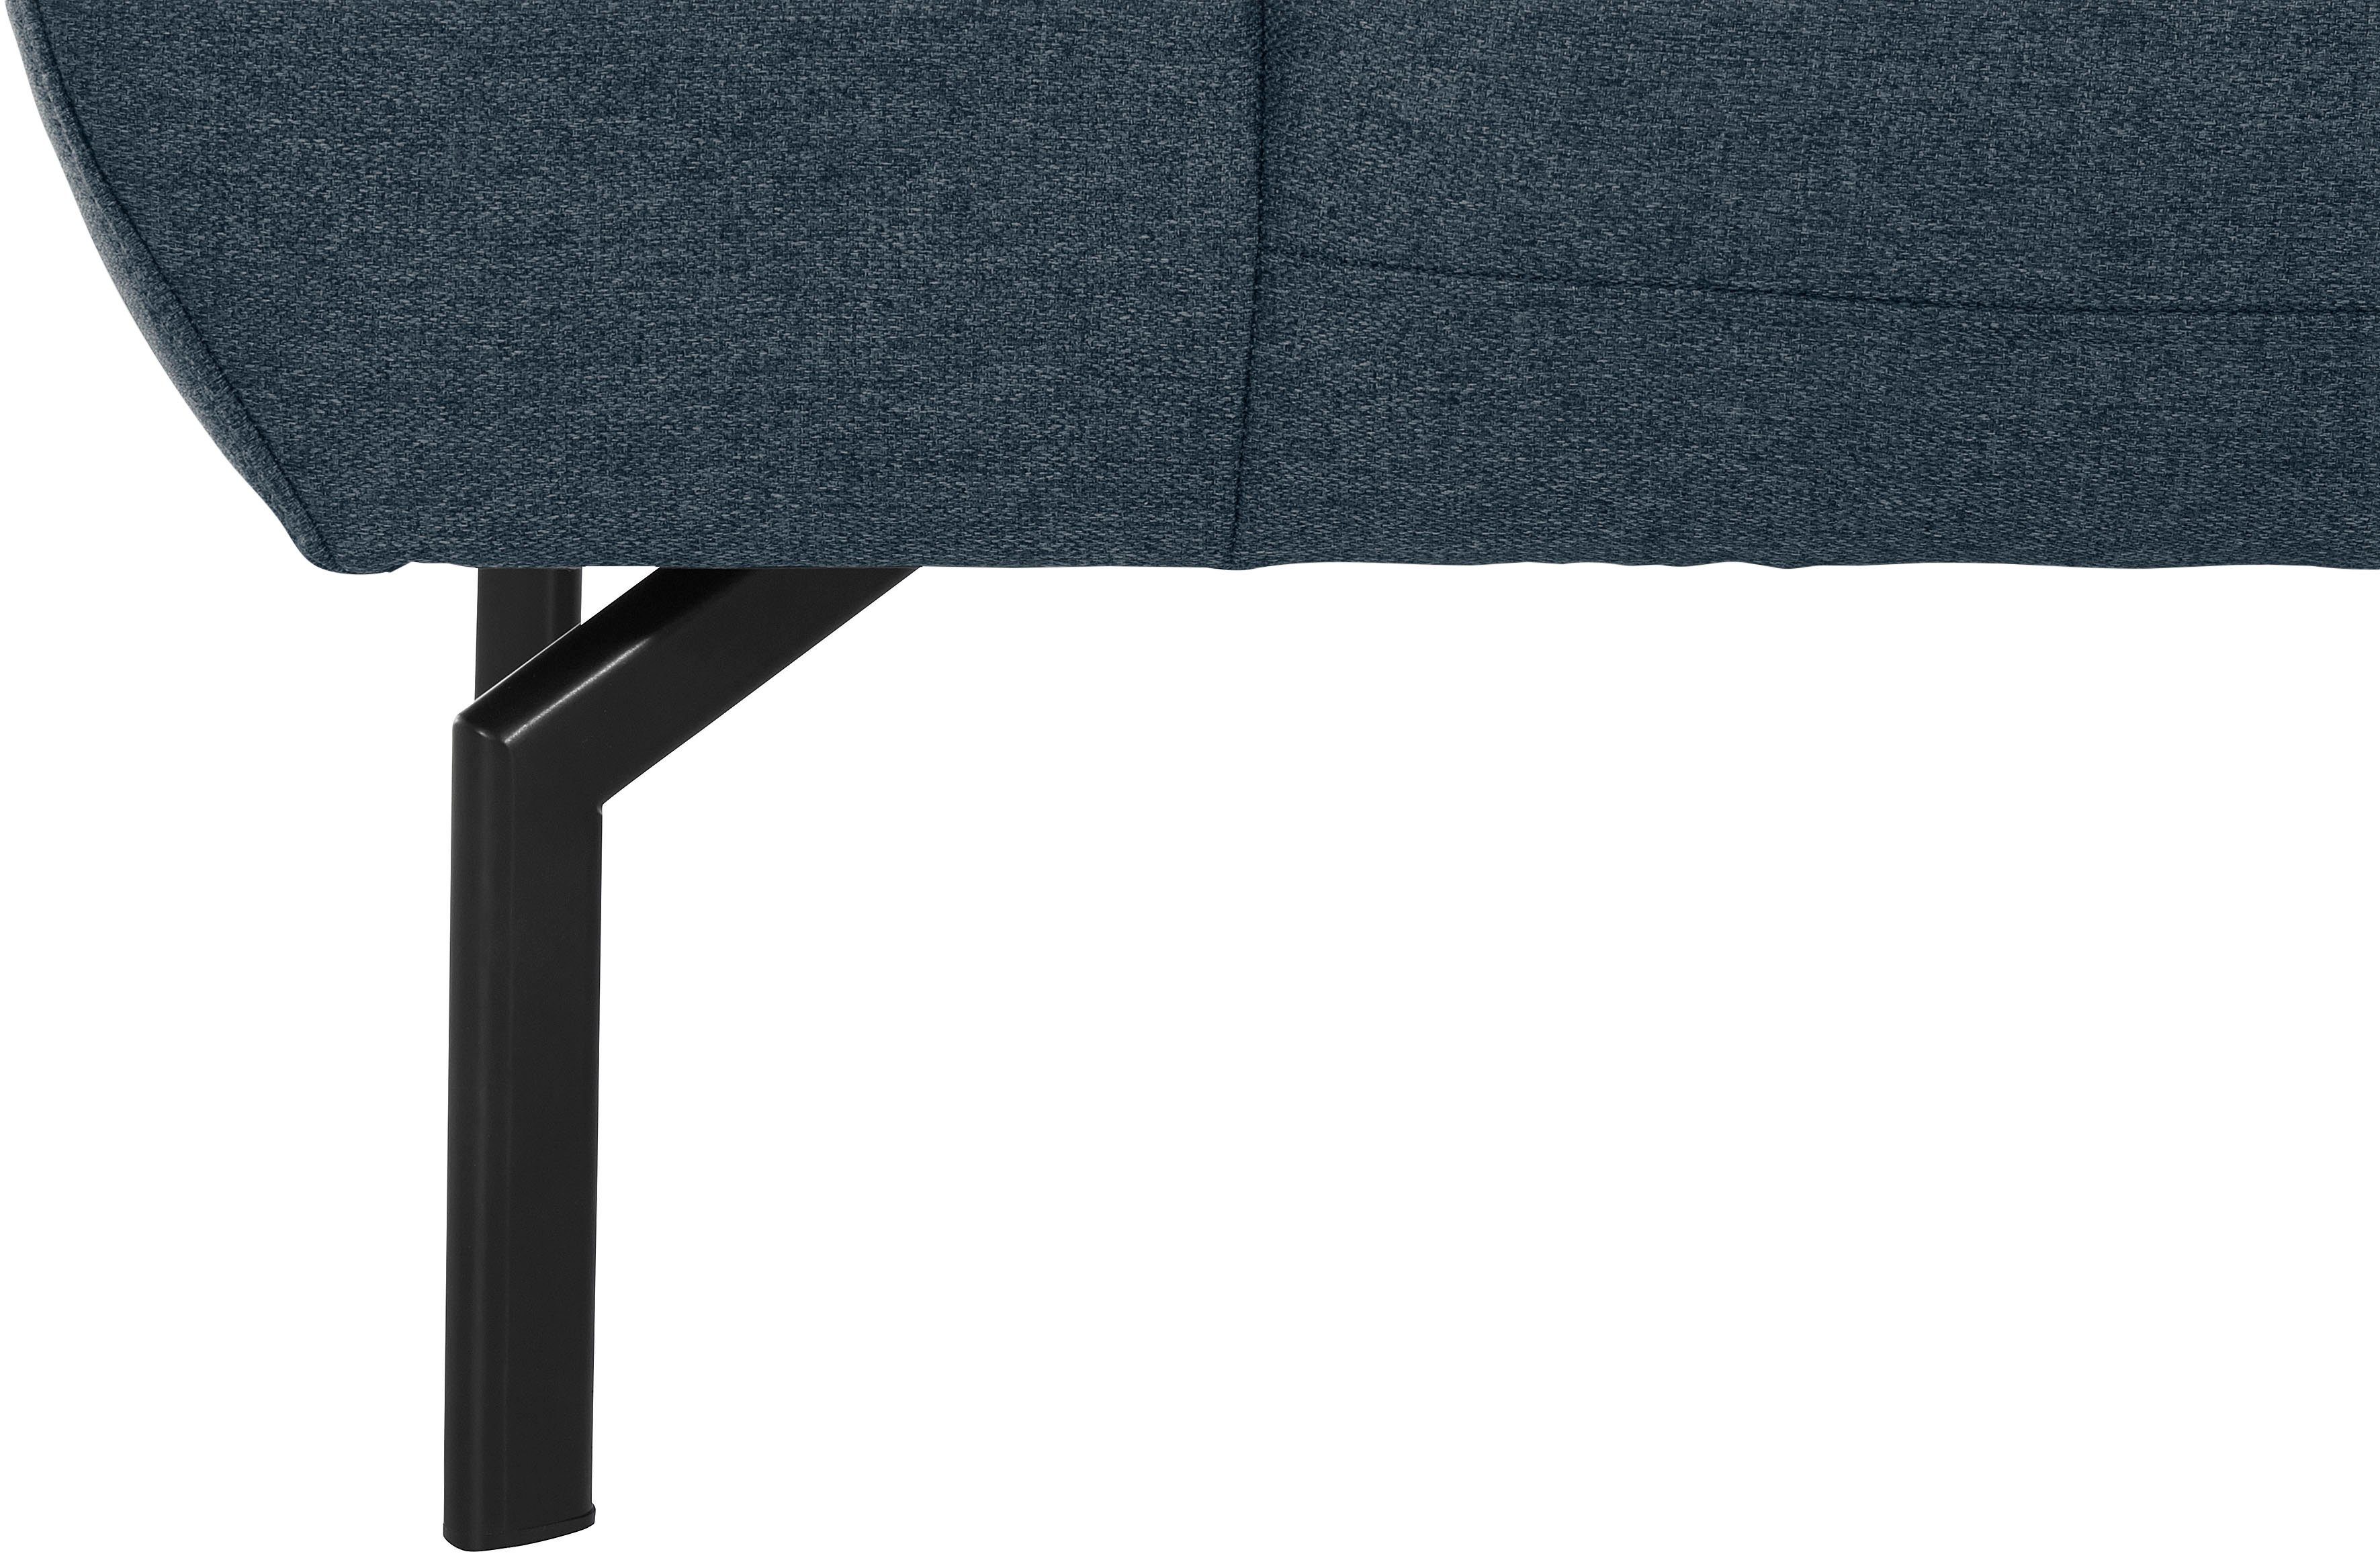 Places of Style 2-Sitzer Trapino Luxus, mit Luxus-Microfaser in Lederoptik wahlweise Rückenverstellung